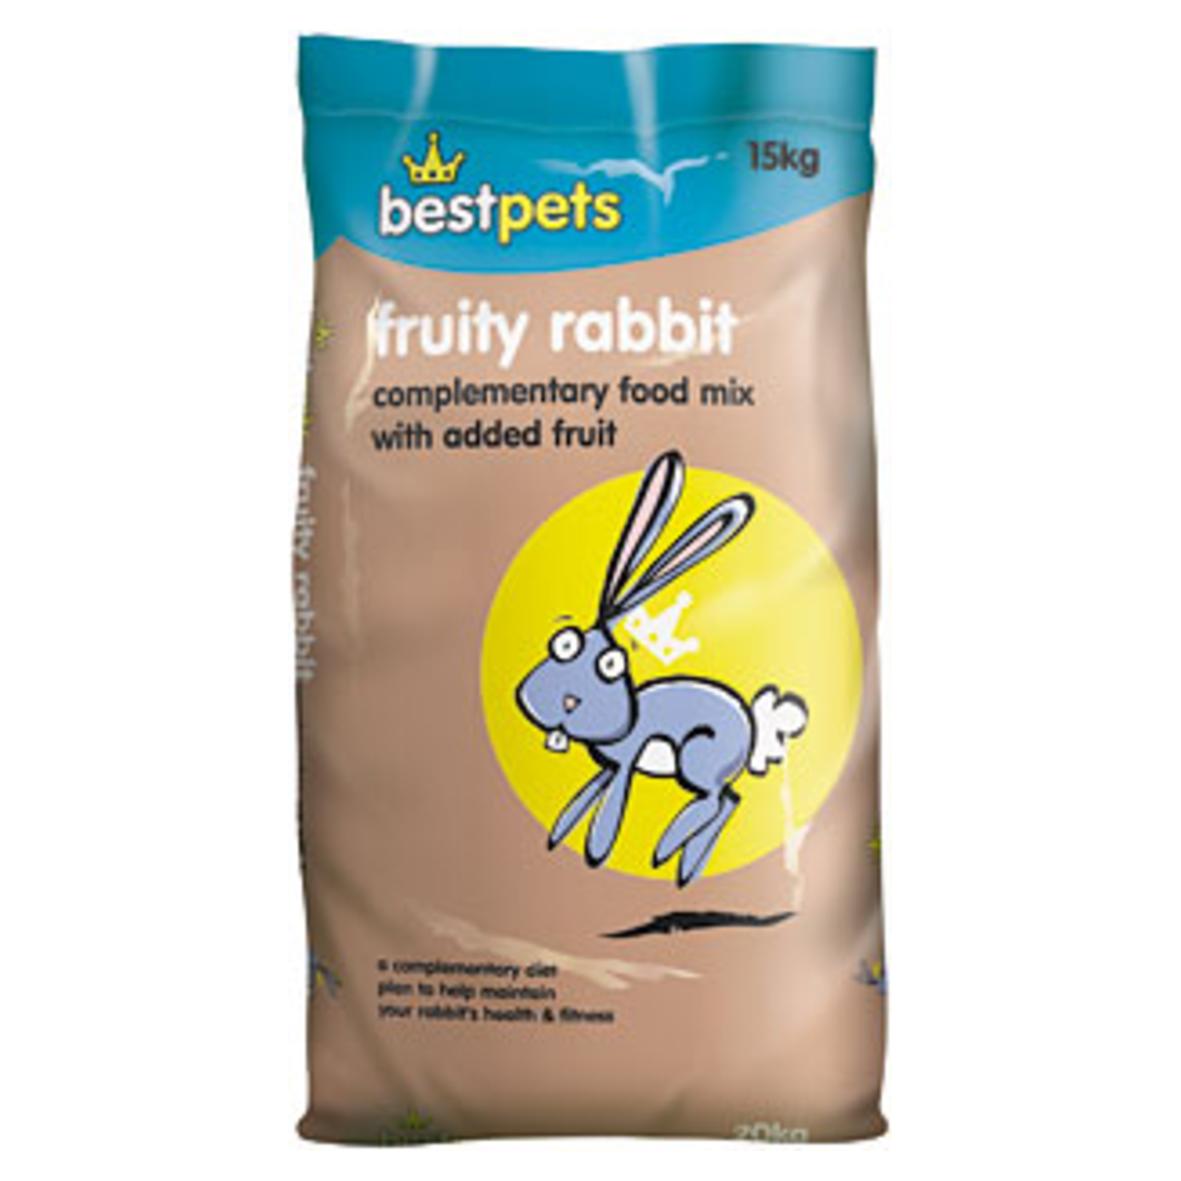 BestPets Fruity Rabbit 15kg